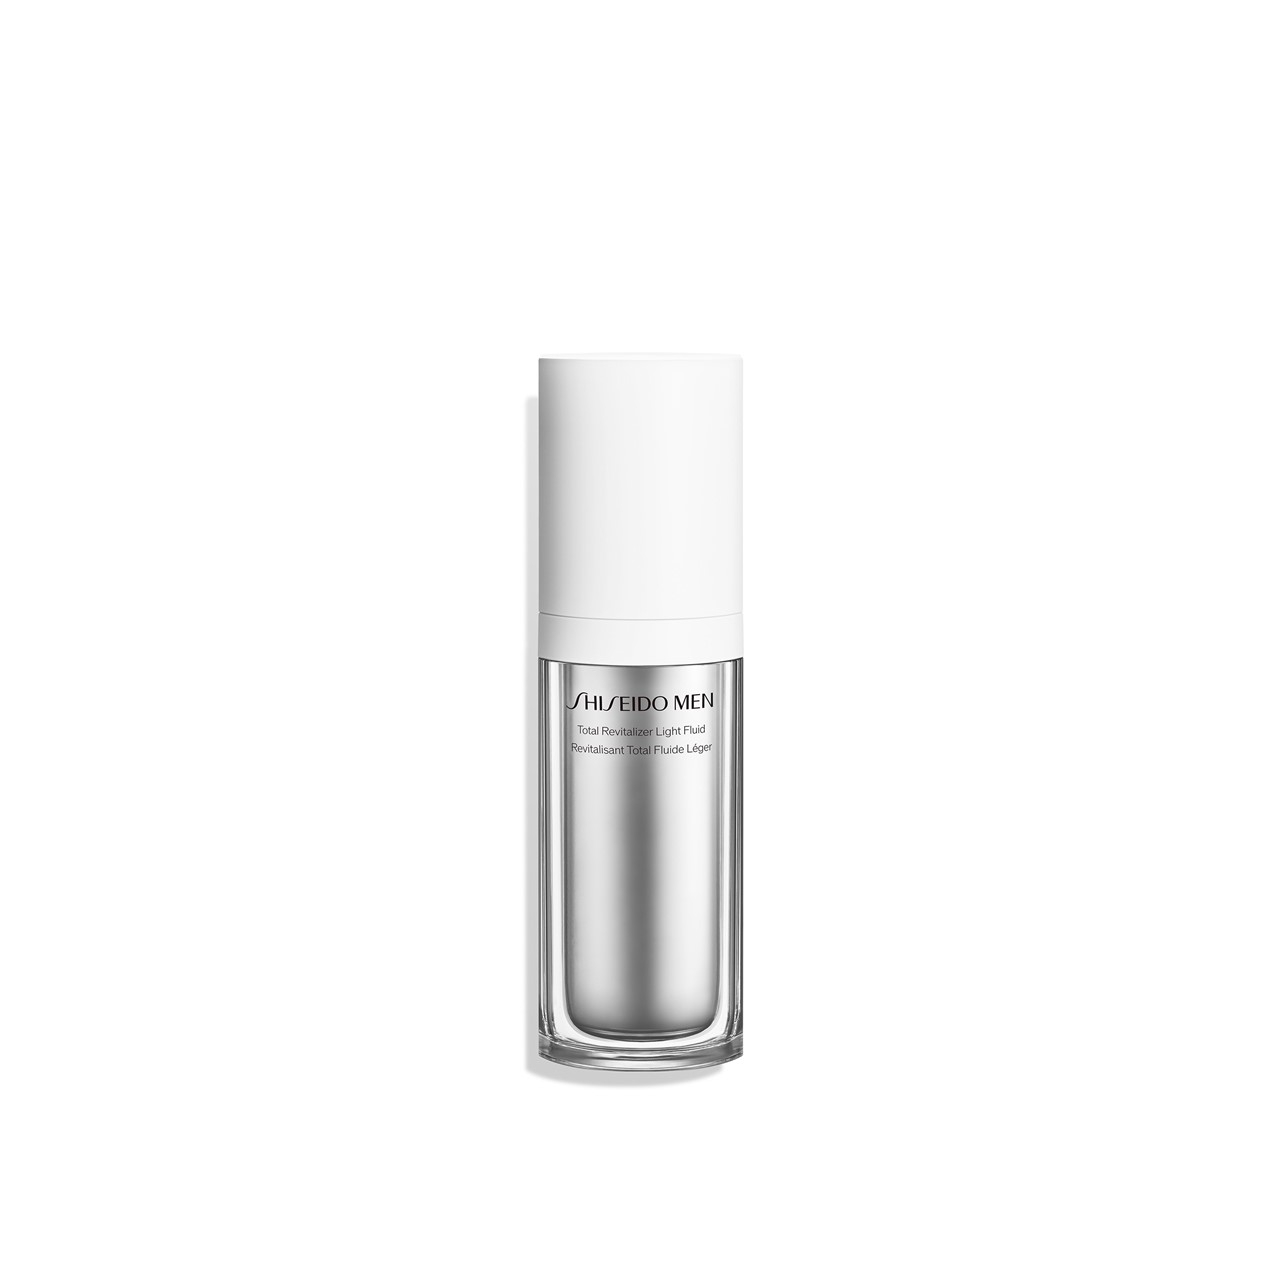 Shiseido Men Total Revitalizer Light Fluid 70ml (2.37fl oz)